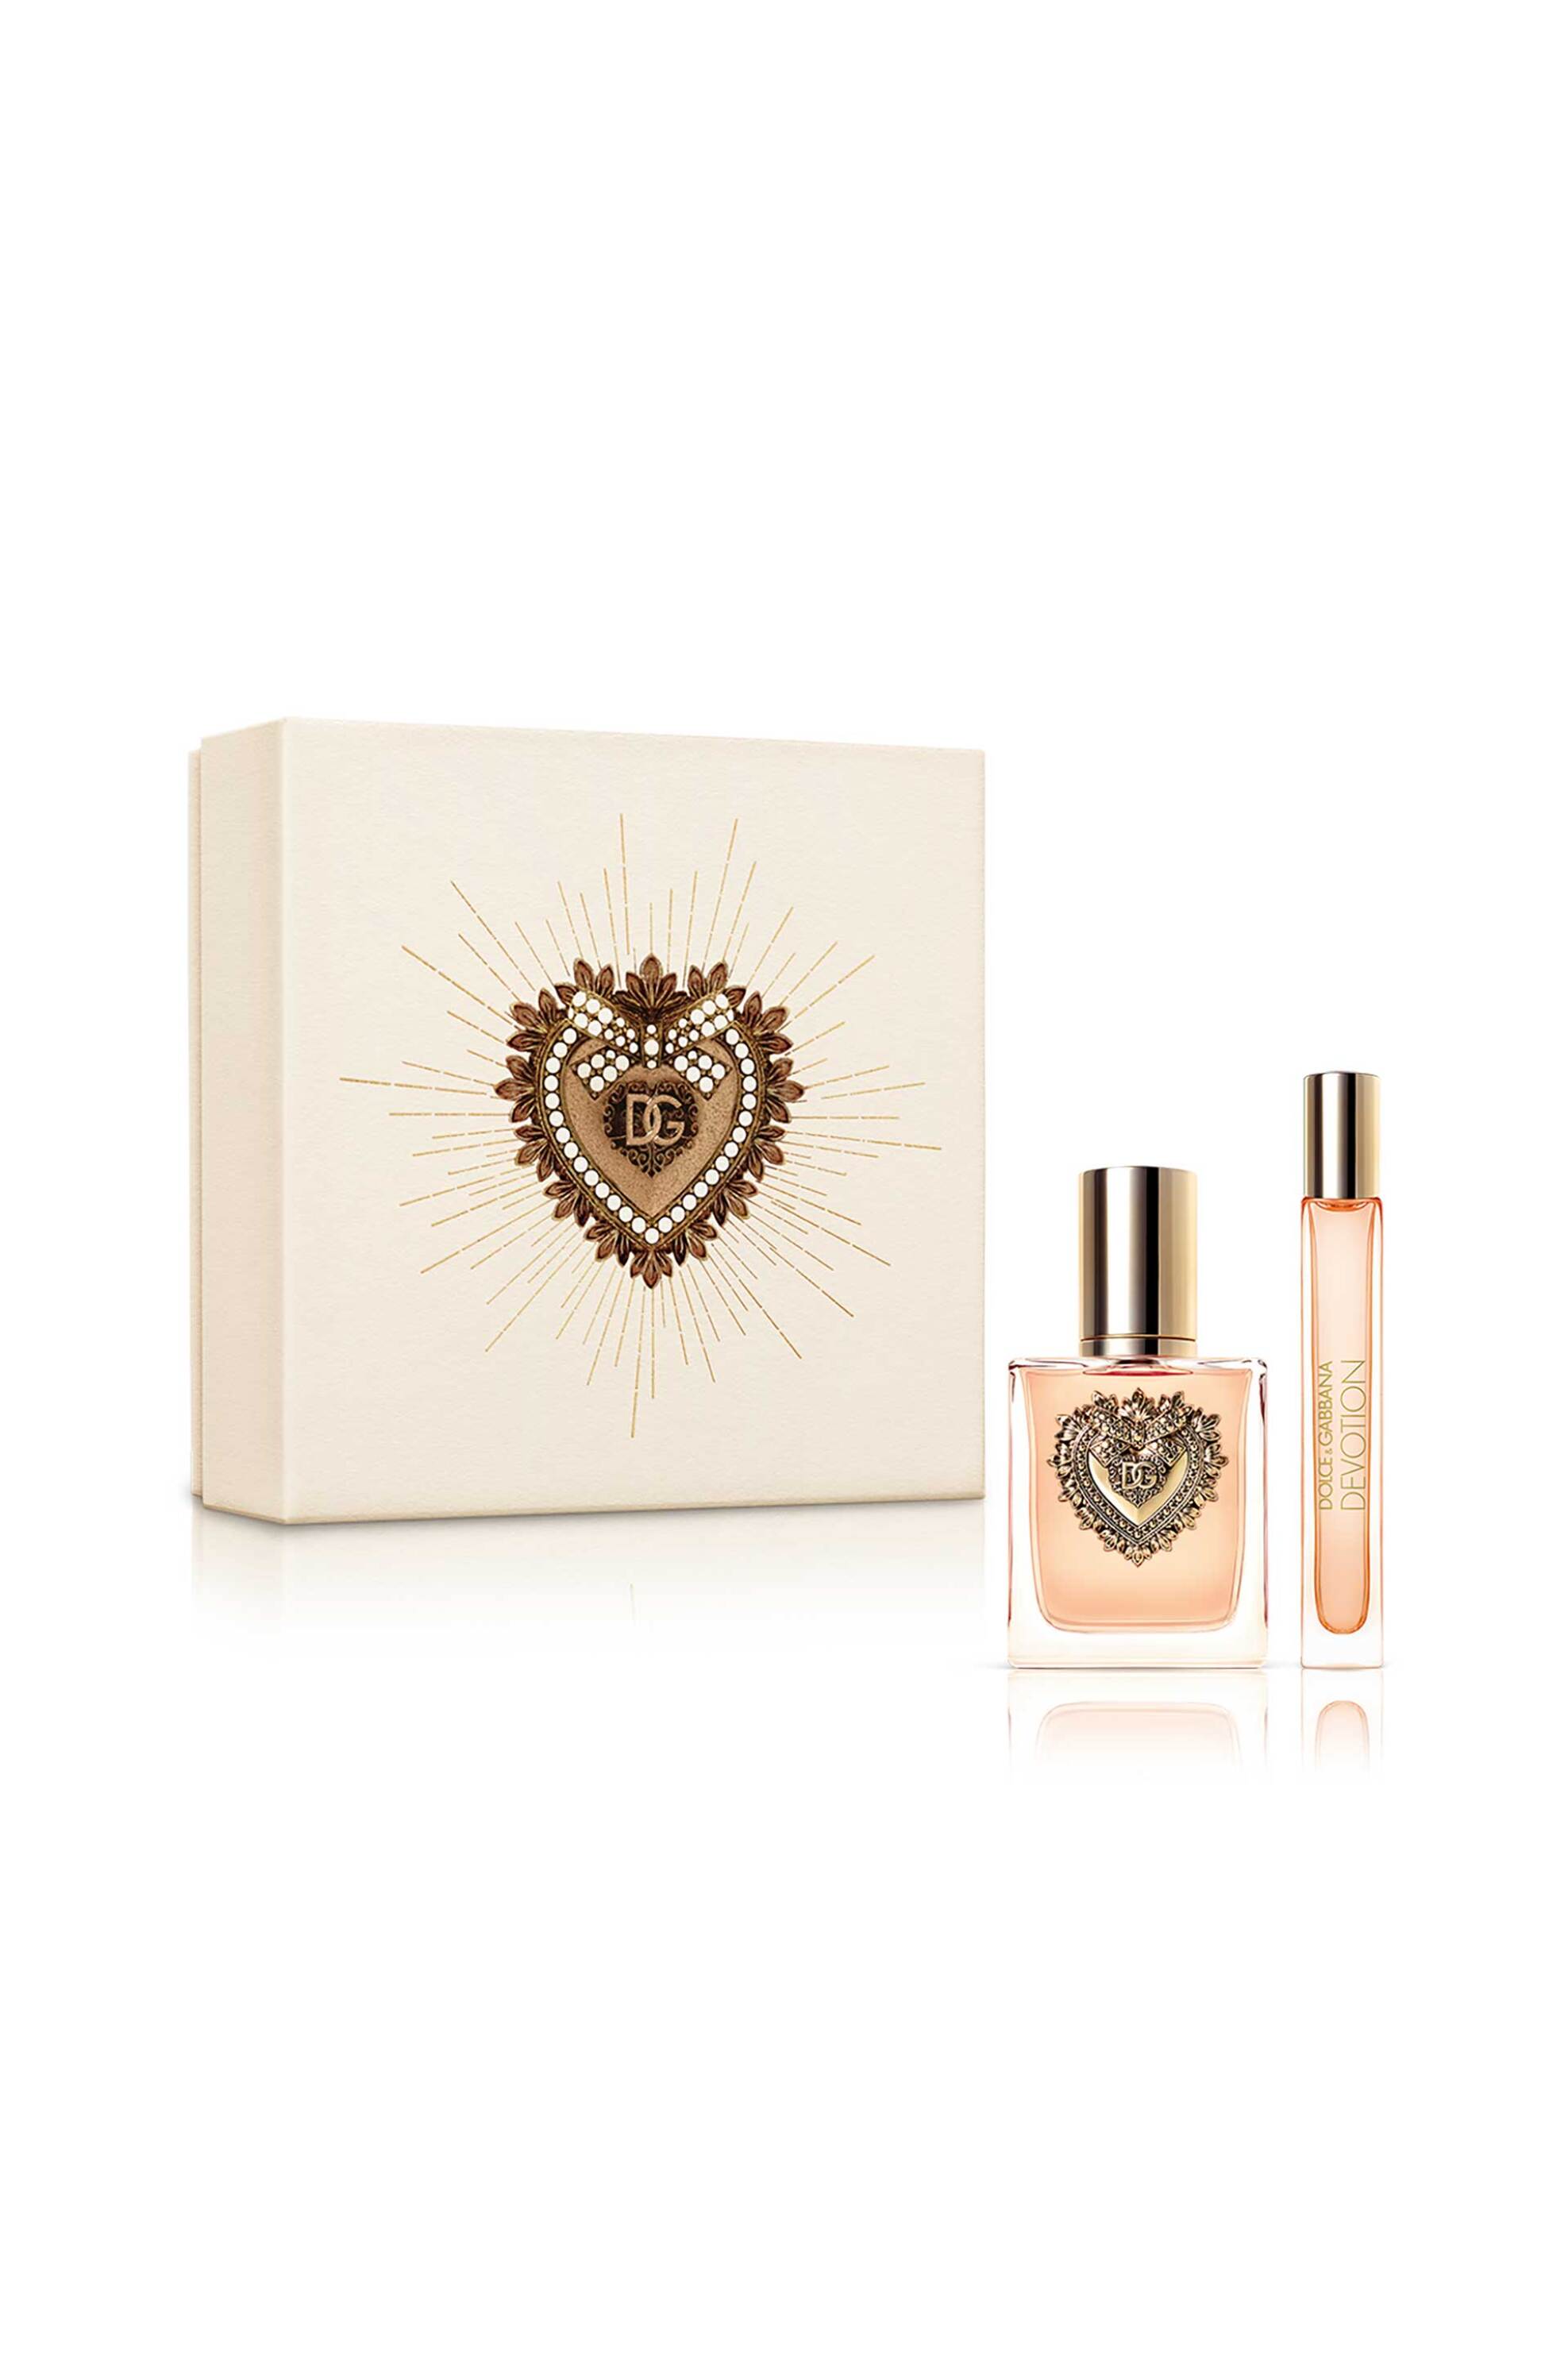 Προϊόντα Ομορφιάς > ΑΡΩΜΑΤΑ > Γυναικεία Αρώματα > Σετ Αρωμάτων Dolce&Gabbana Devotion Eau de Parfum Gift Set - P1DV2L02